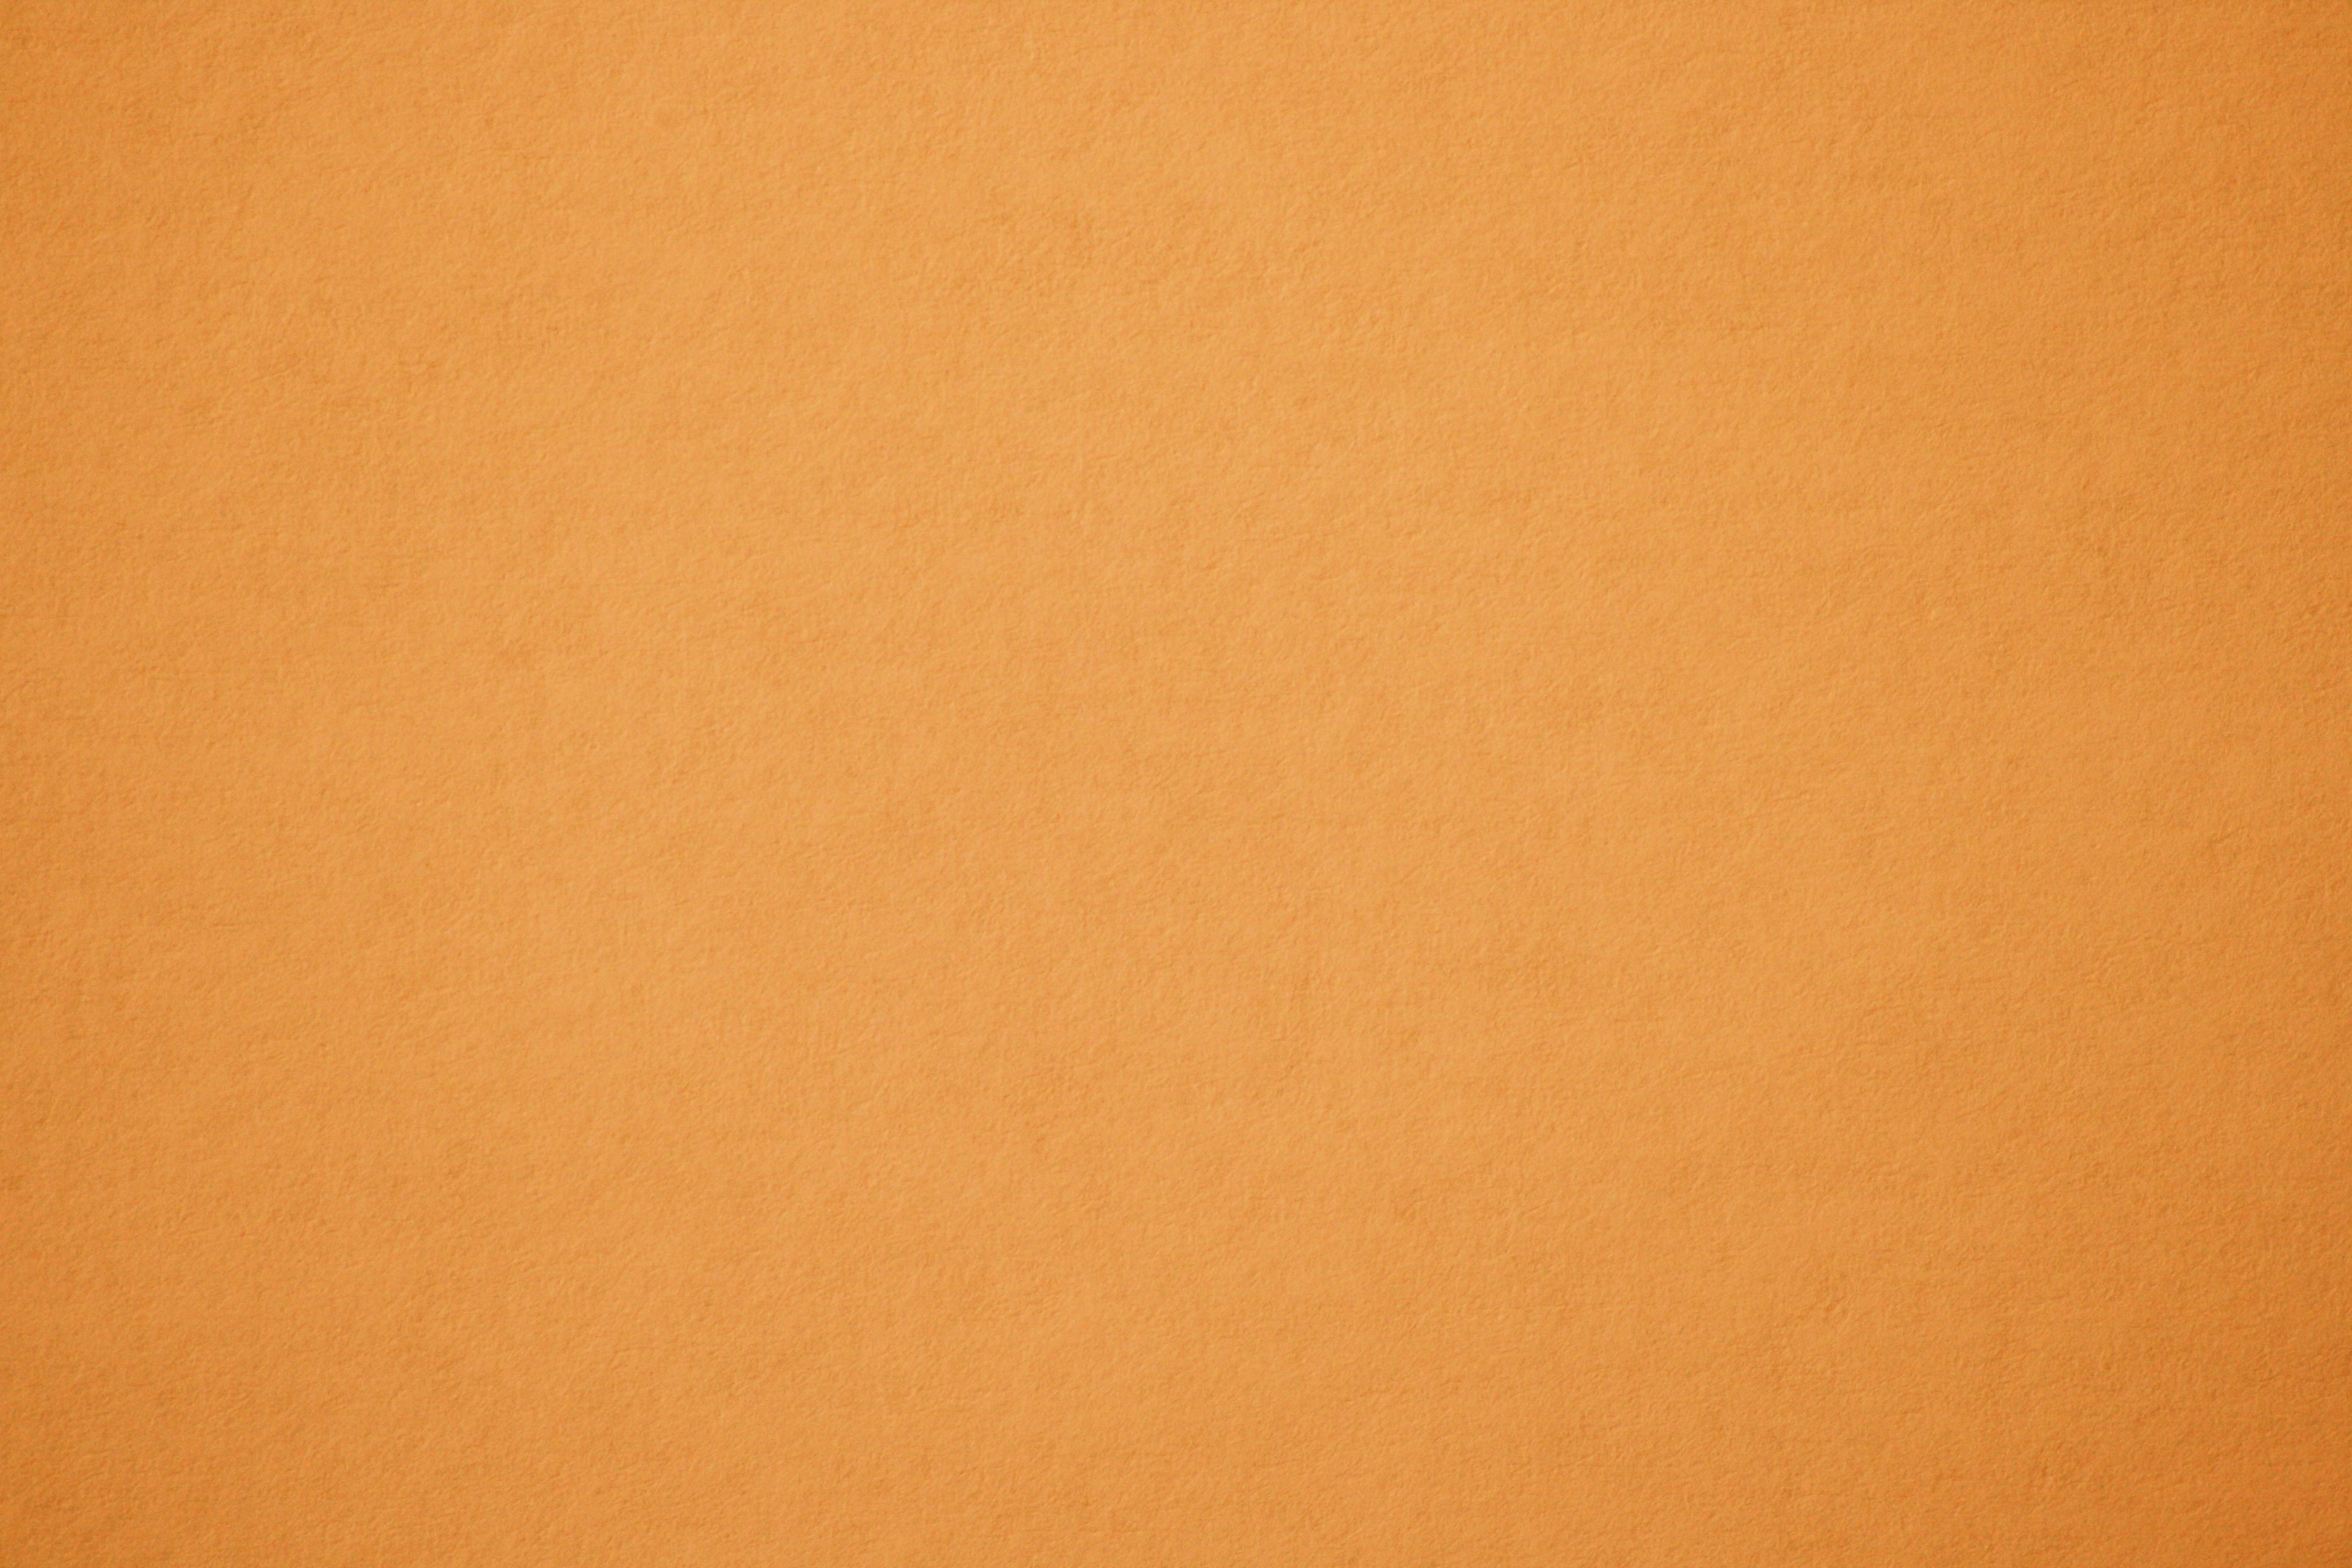 Light Orange Paper Texture Picture | Free Photograph | Photos Public Domain